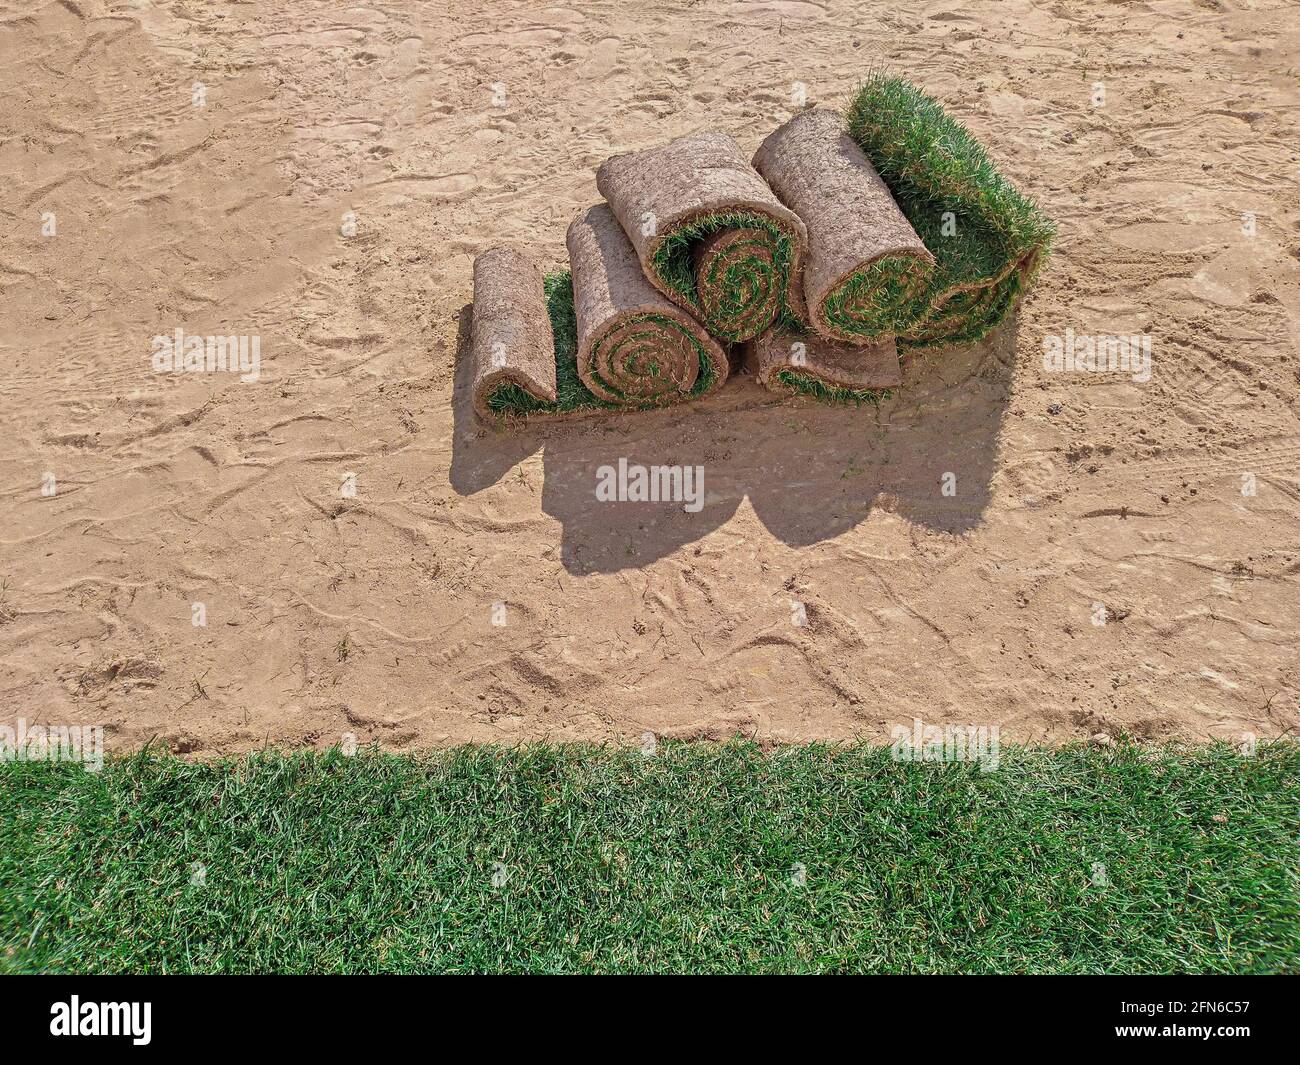 Rasen Gras Rollen oder Sod auf einem Sandboden liegen, Nahaufnahme Stockfoto